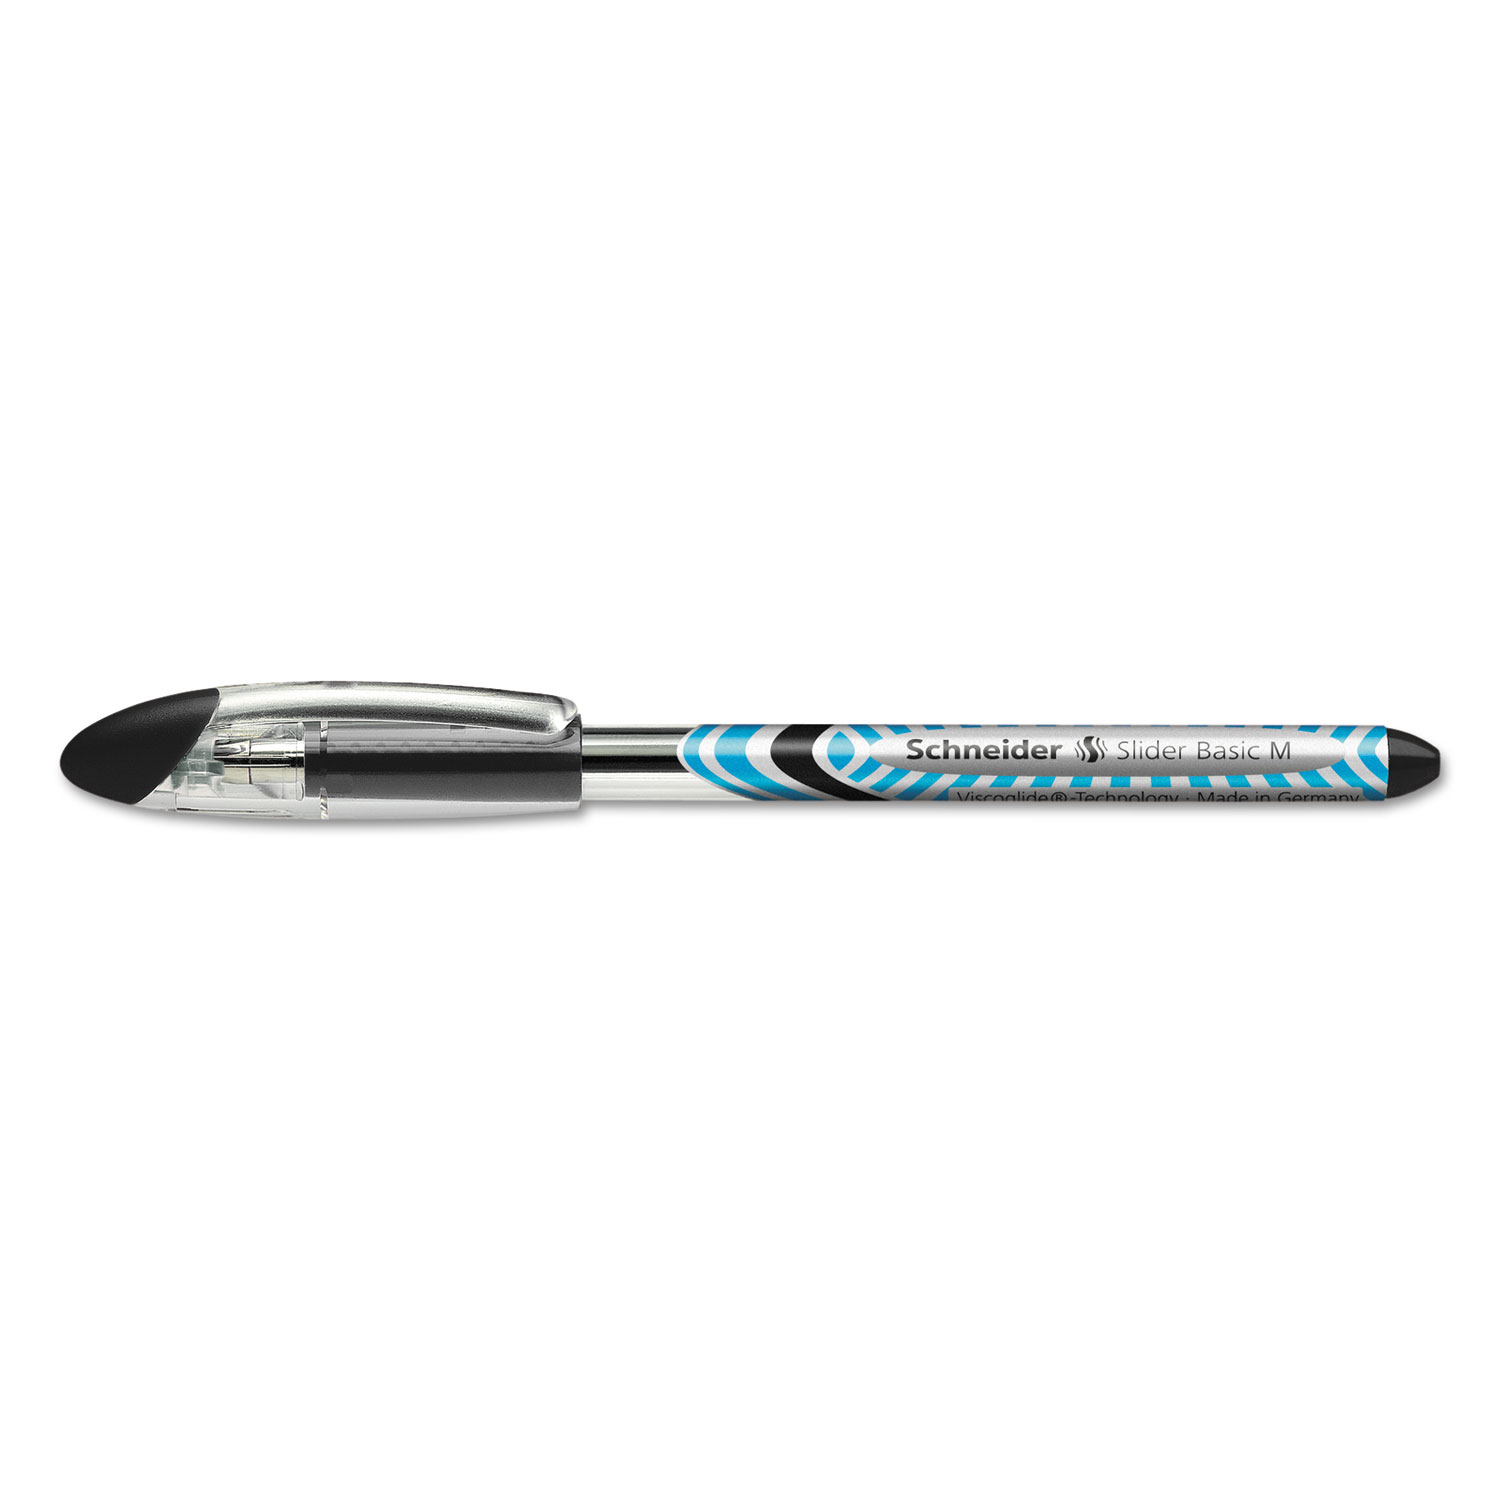  Stride 151101 Schneider Slider Stick Ballpoint Pen, 0.8mm, Black Ink, Blue/Silver/Black Barrel, 10/Box (STW151101) 